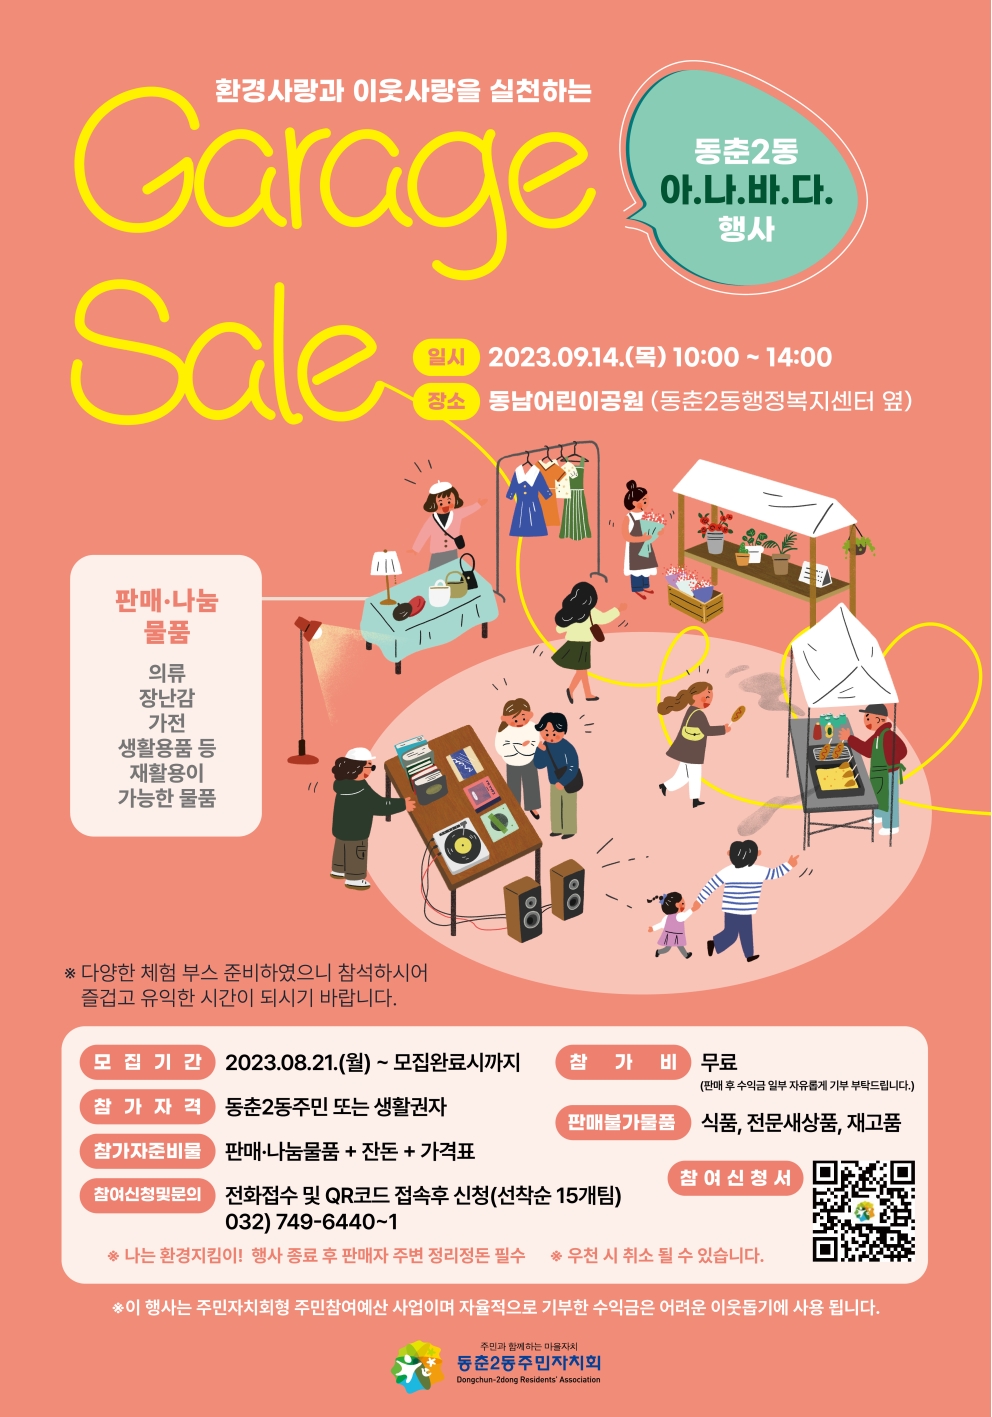 Garage Sale(아나바다) 행사 개최 안내의 번째 이미지